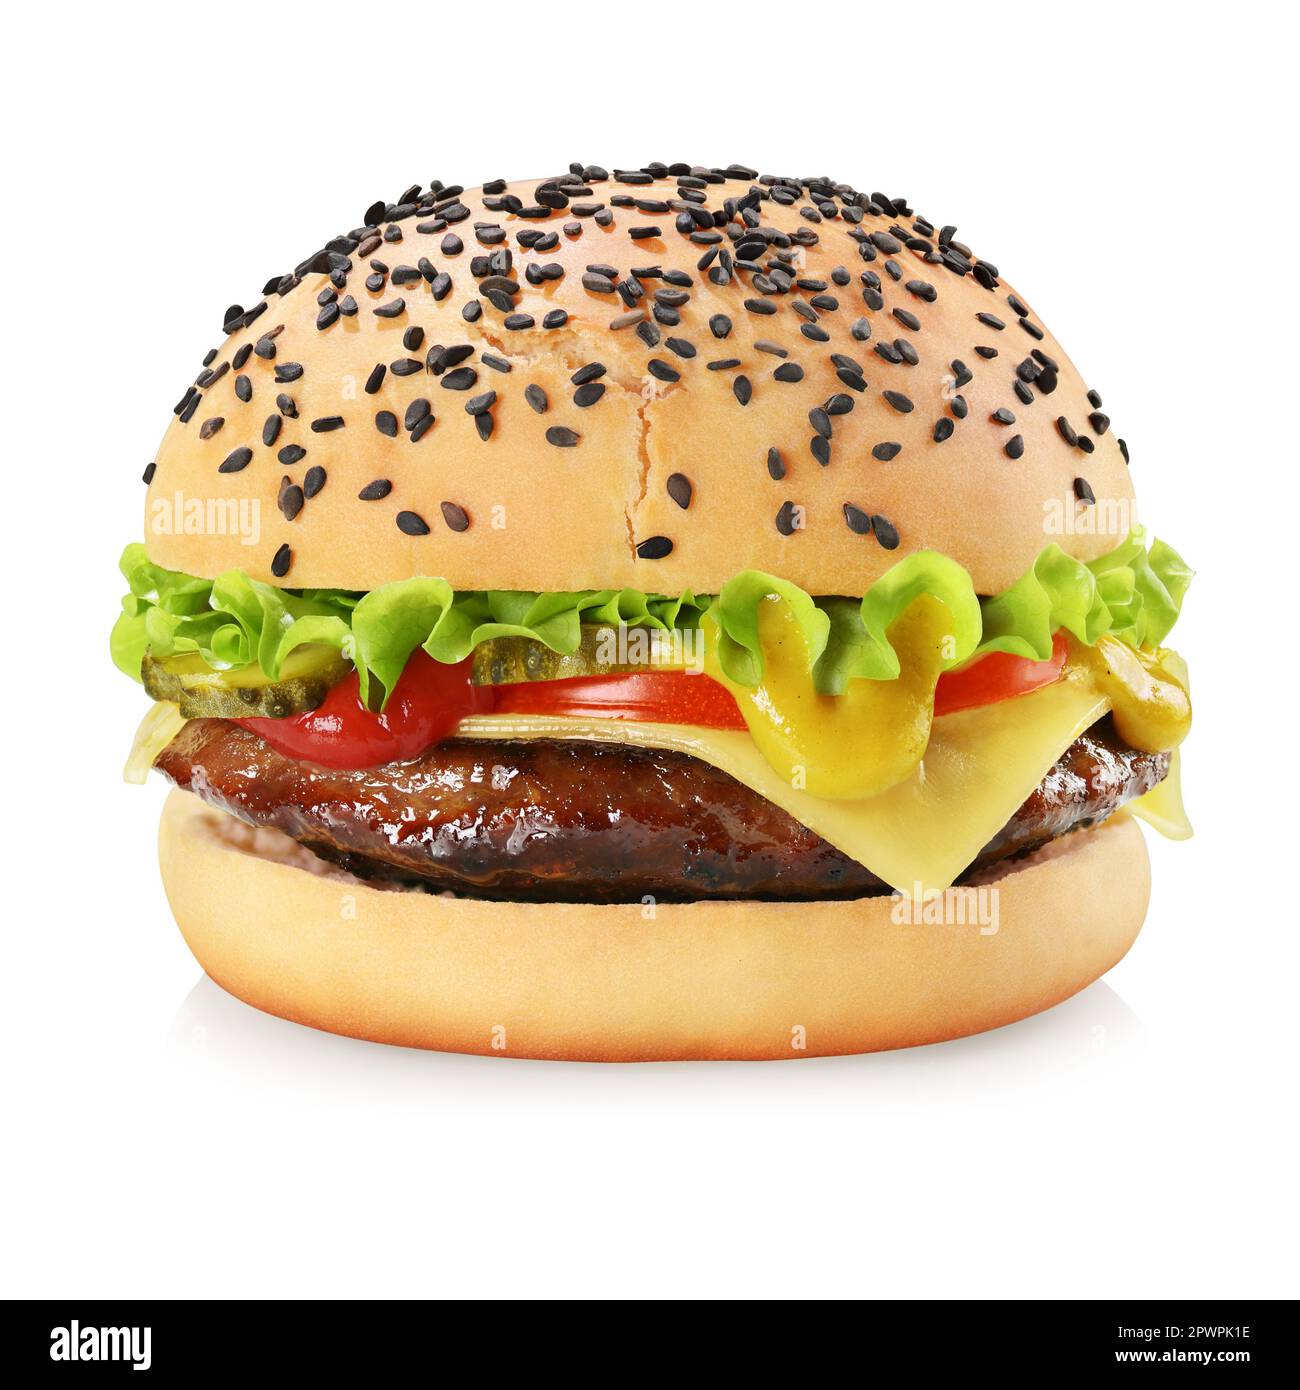 Cheeseburger mit Rinderpastete, Gurken, Käse, Tomaten, Zwiebeln, Salat, Ketchup und Senf, isoliert auf weißem Hintergrund. Stockfoto